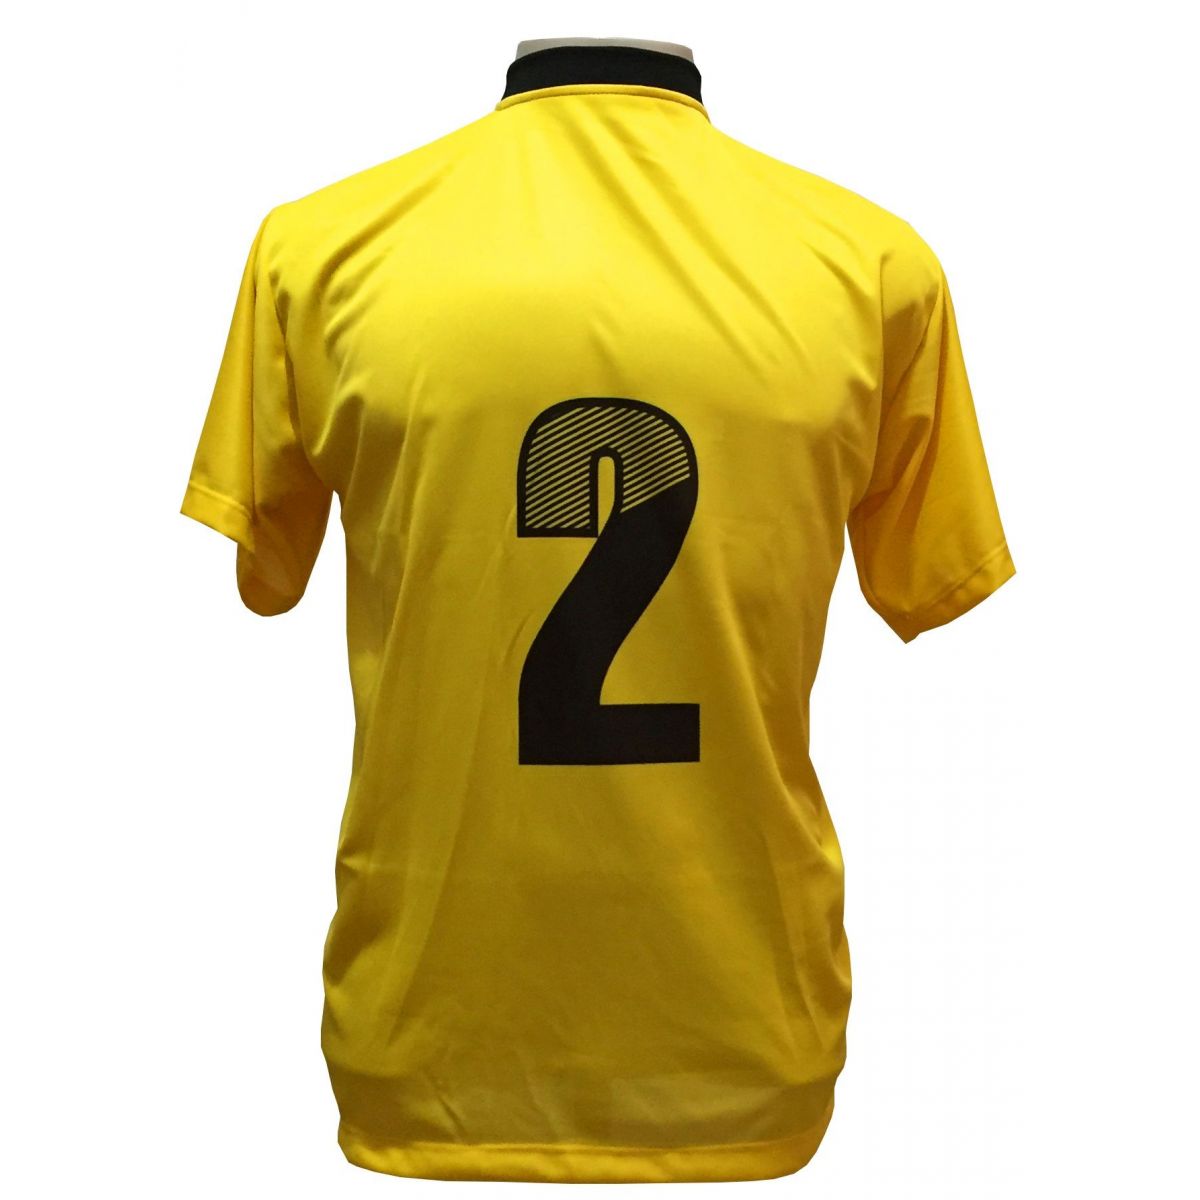 Fardamento Completo modelo Roma 20+1 (20 camisas Amarelo/Preto + 20 calções modelo Copa Preto/Amarelo + 20 pares de meiões Amarelo + 1 conjunto de goleiro) + Brindes